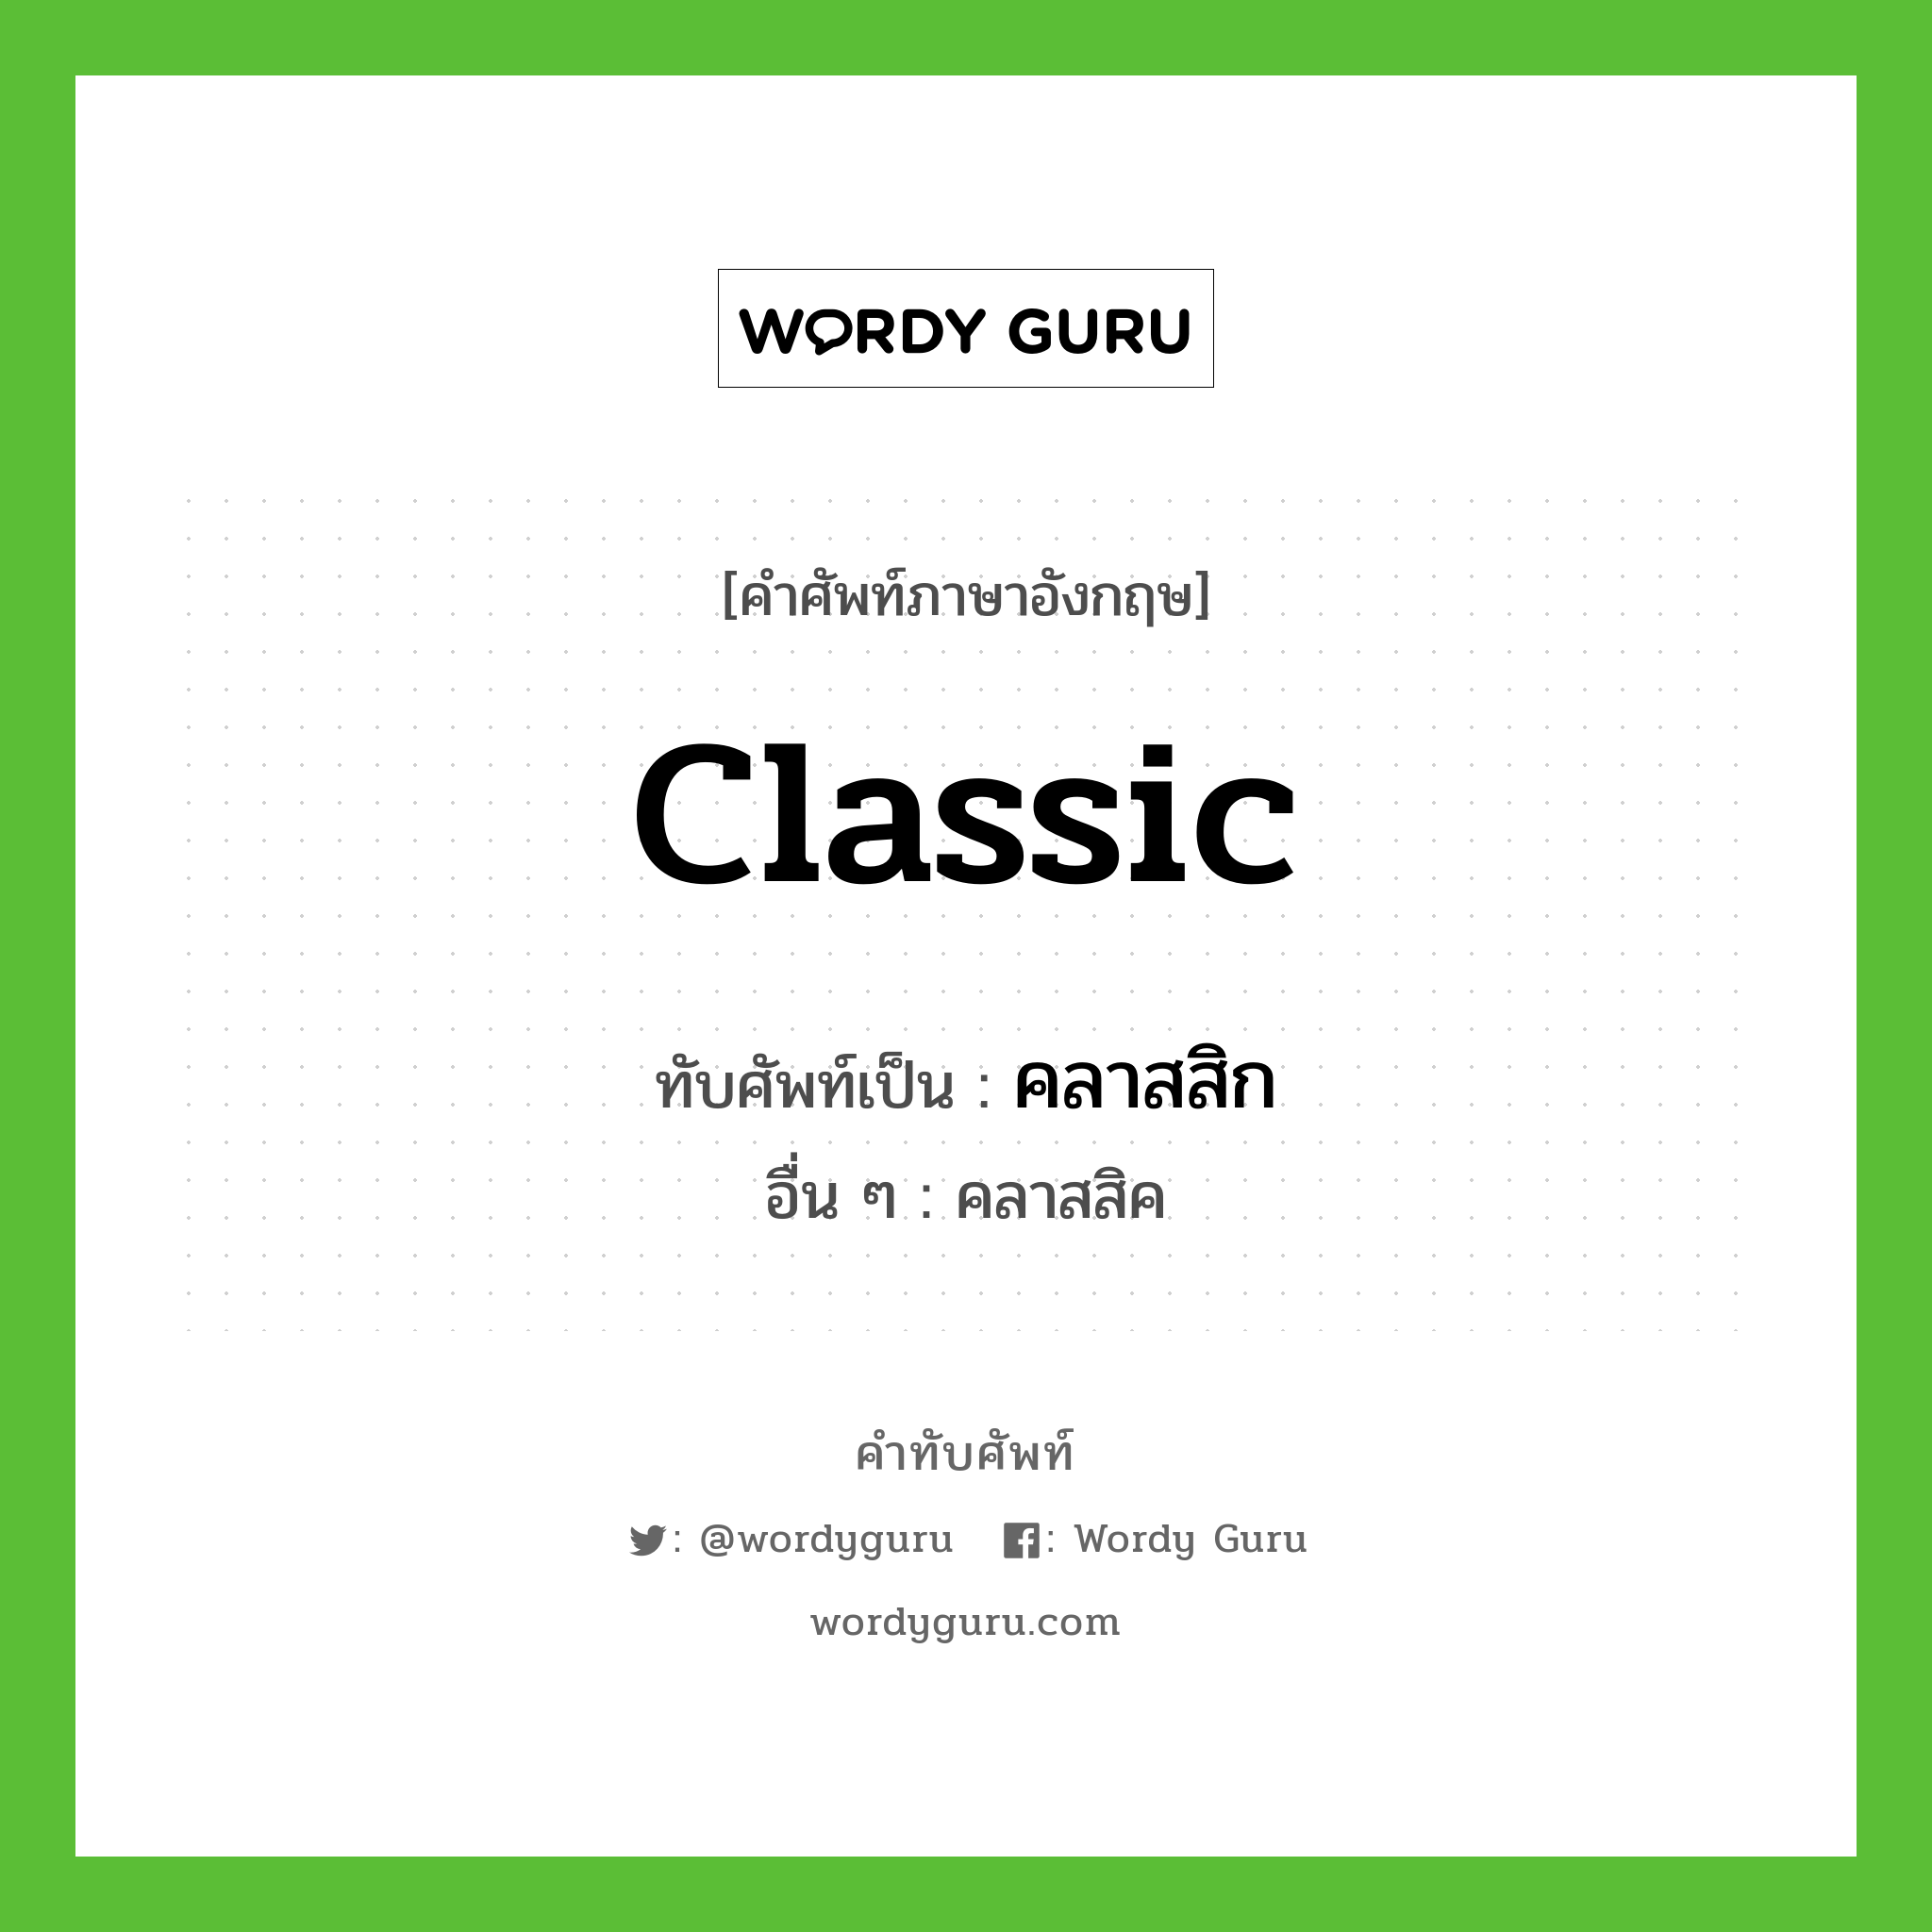 Classic เขียนเป็นคำไทยว่าอะไร? | คำทับศัพท์